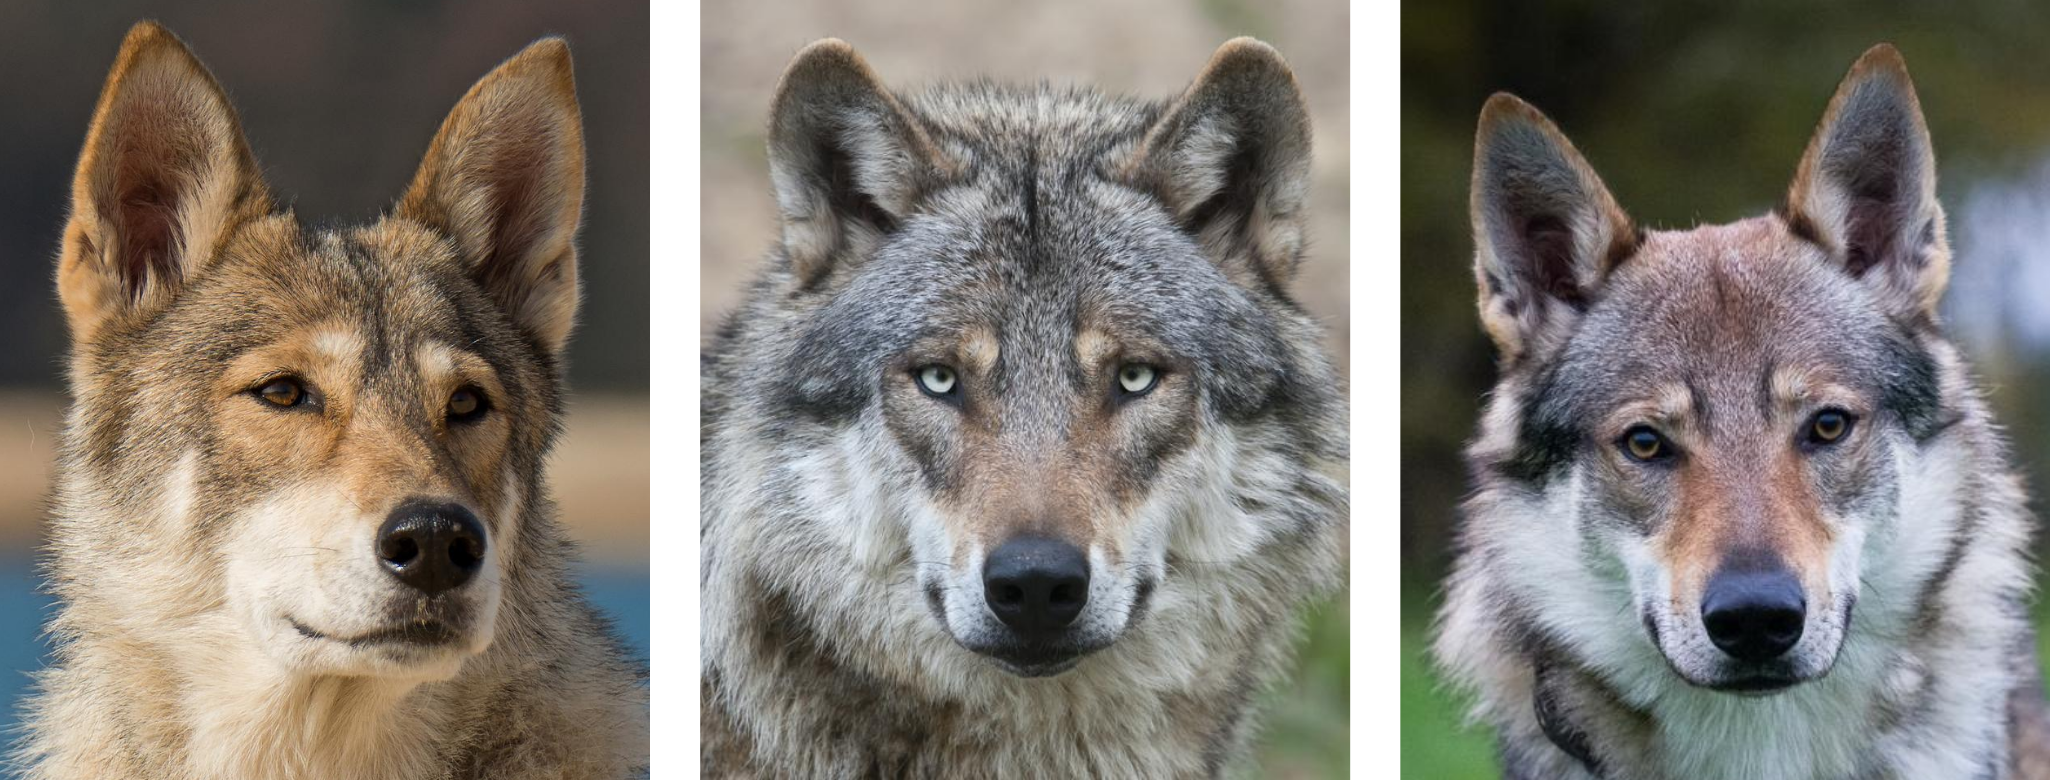 Comparez les oreilles du loup (au milieu) à celles des chiens (à gauche et à droite)